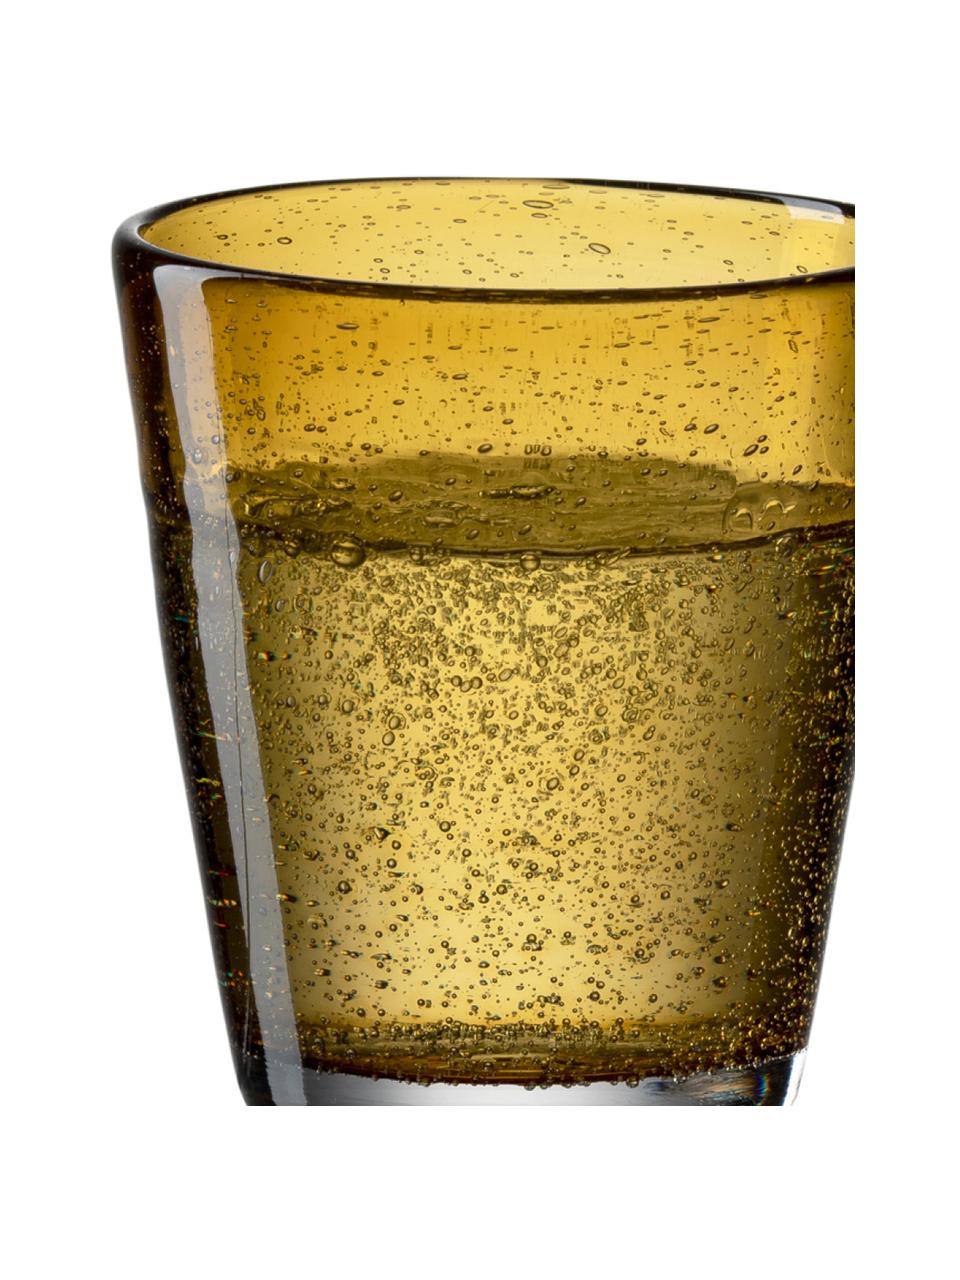 Wassergläser Burano mit Lufteinschlüssen, 6 Stück, Glas, Gelb, Ø 9 x H 19 cm, 330 ml